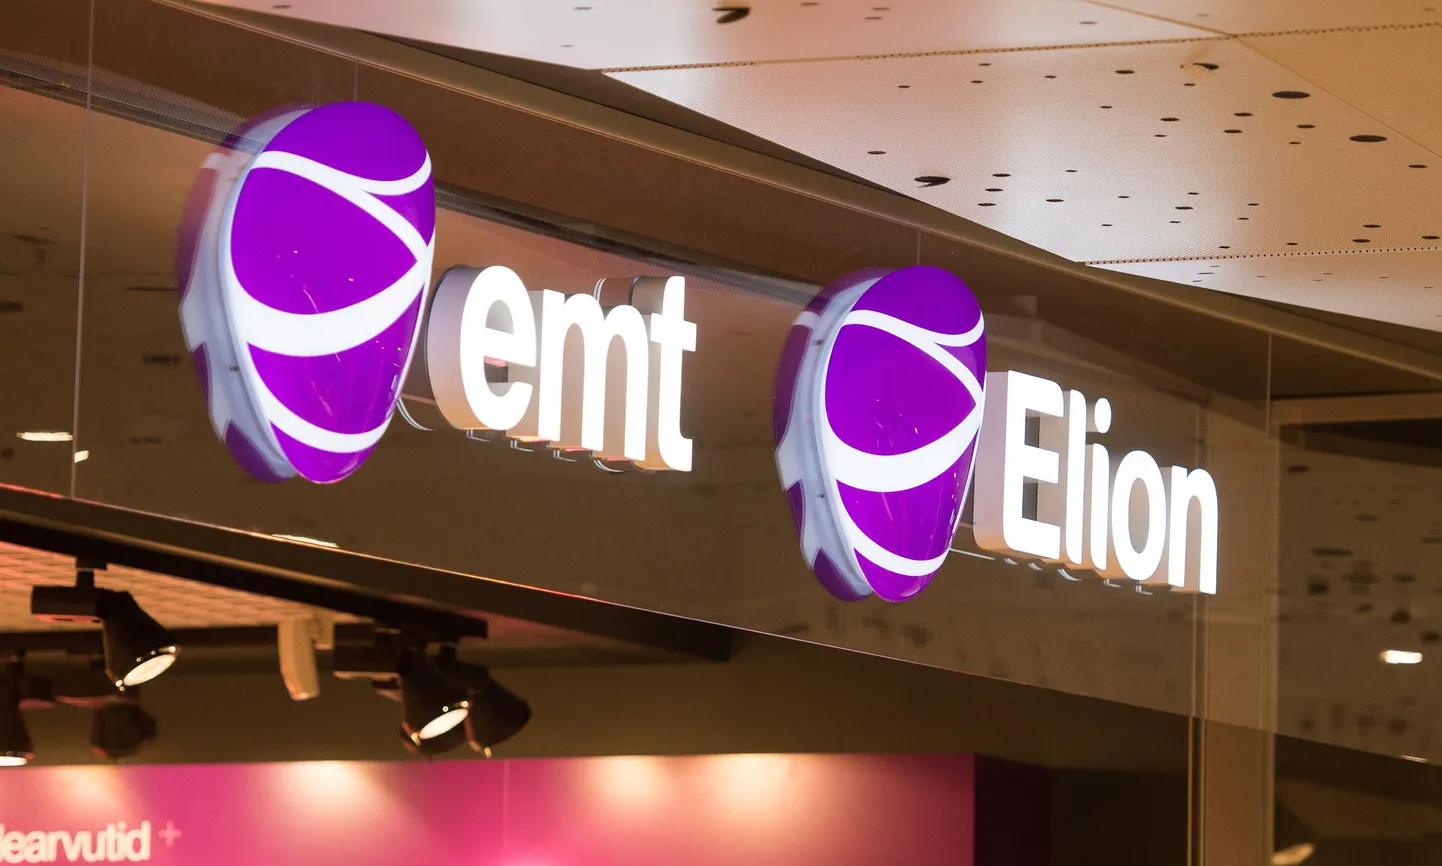 EMT ja Elion kuuluvad Eesti Telekomile.